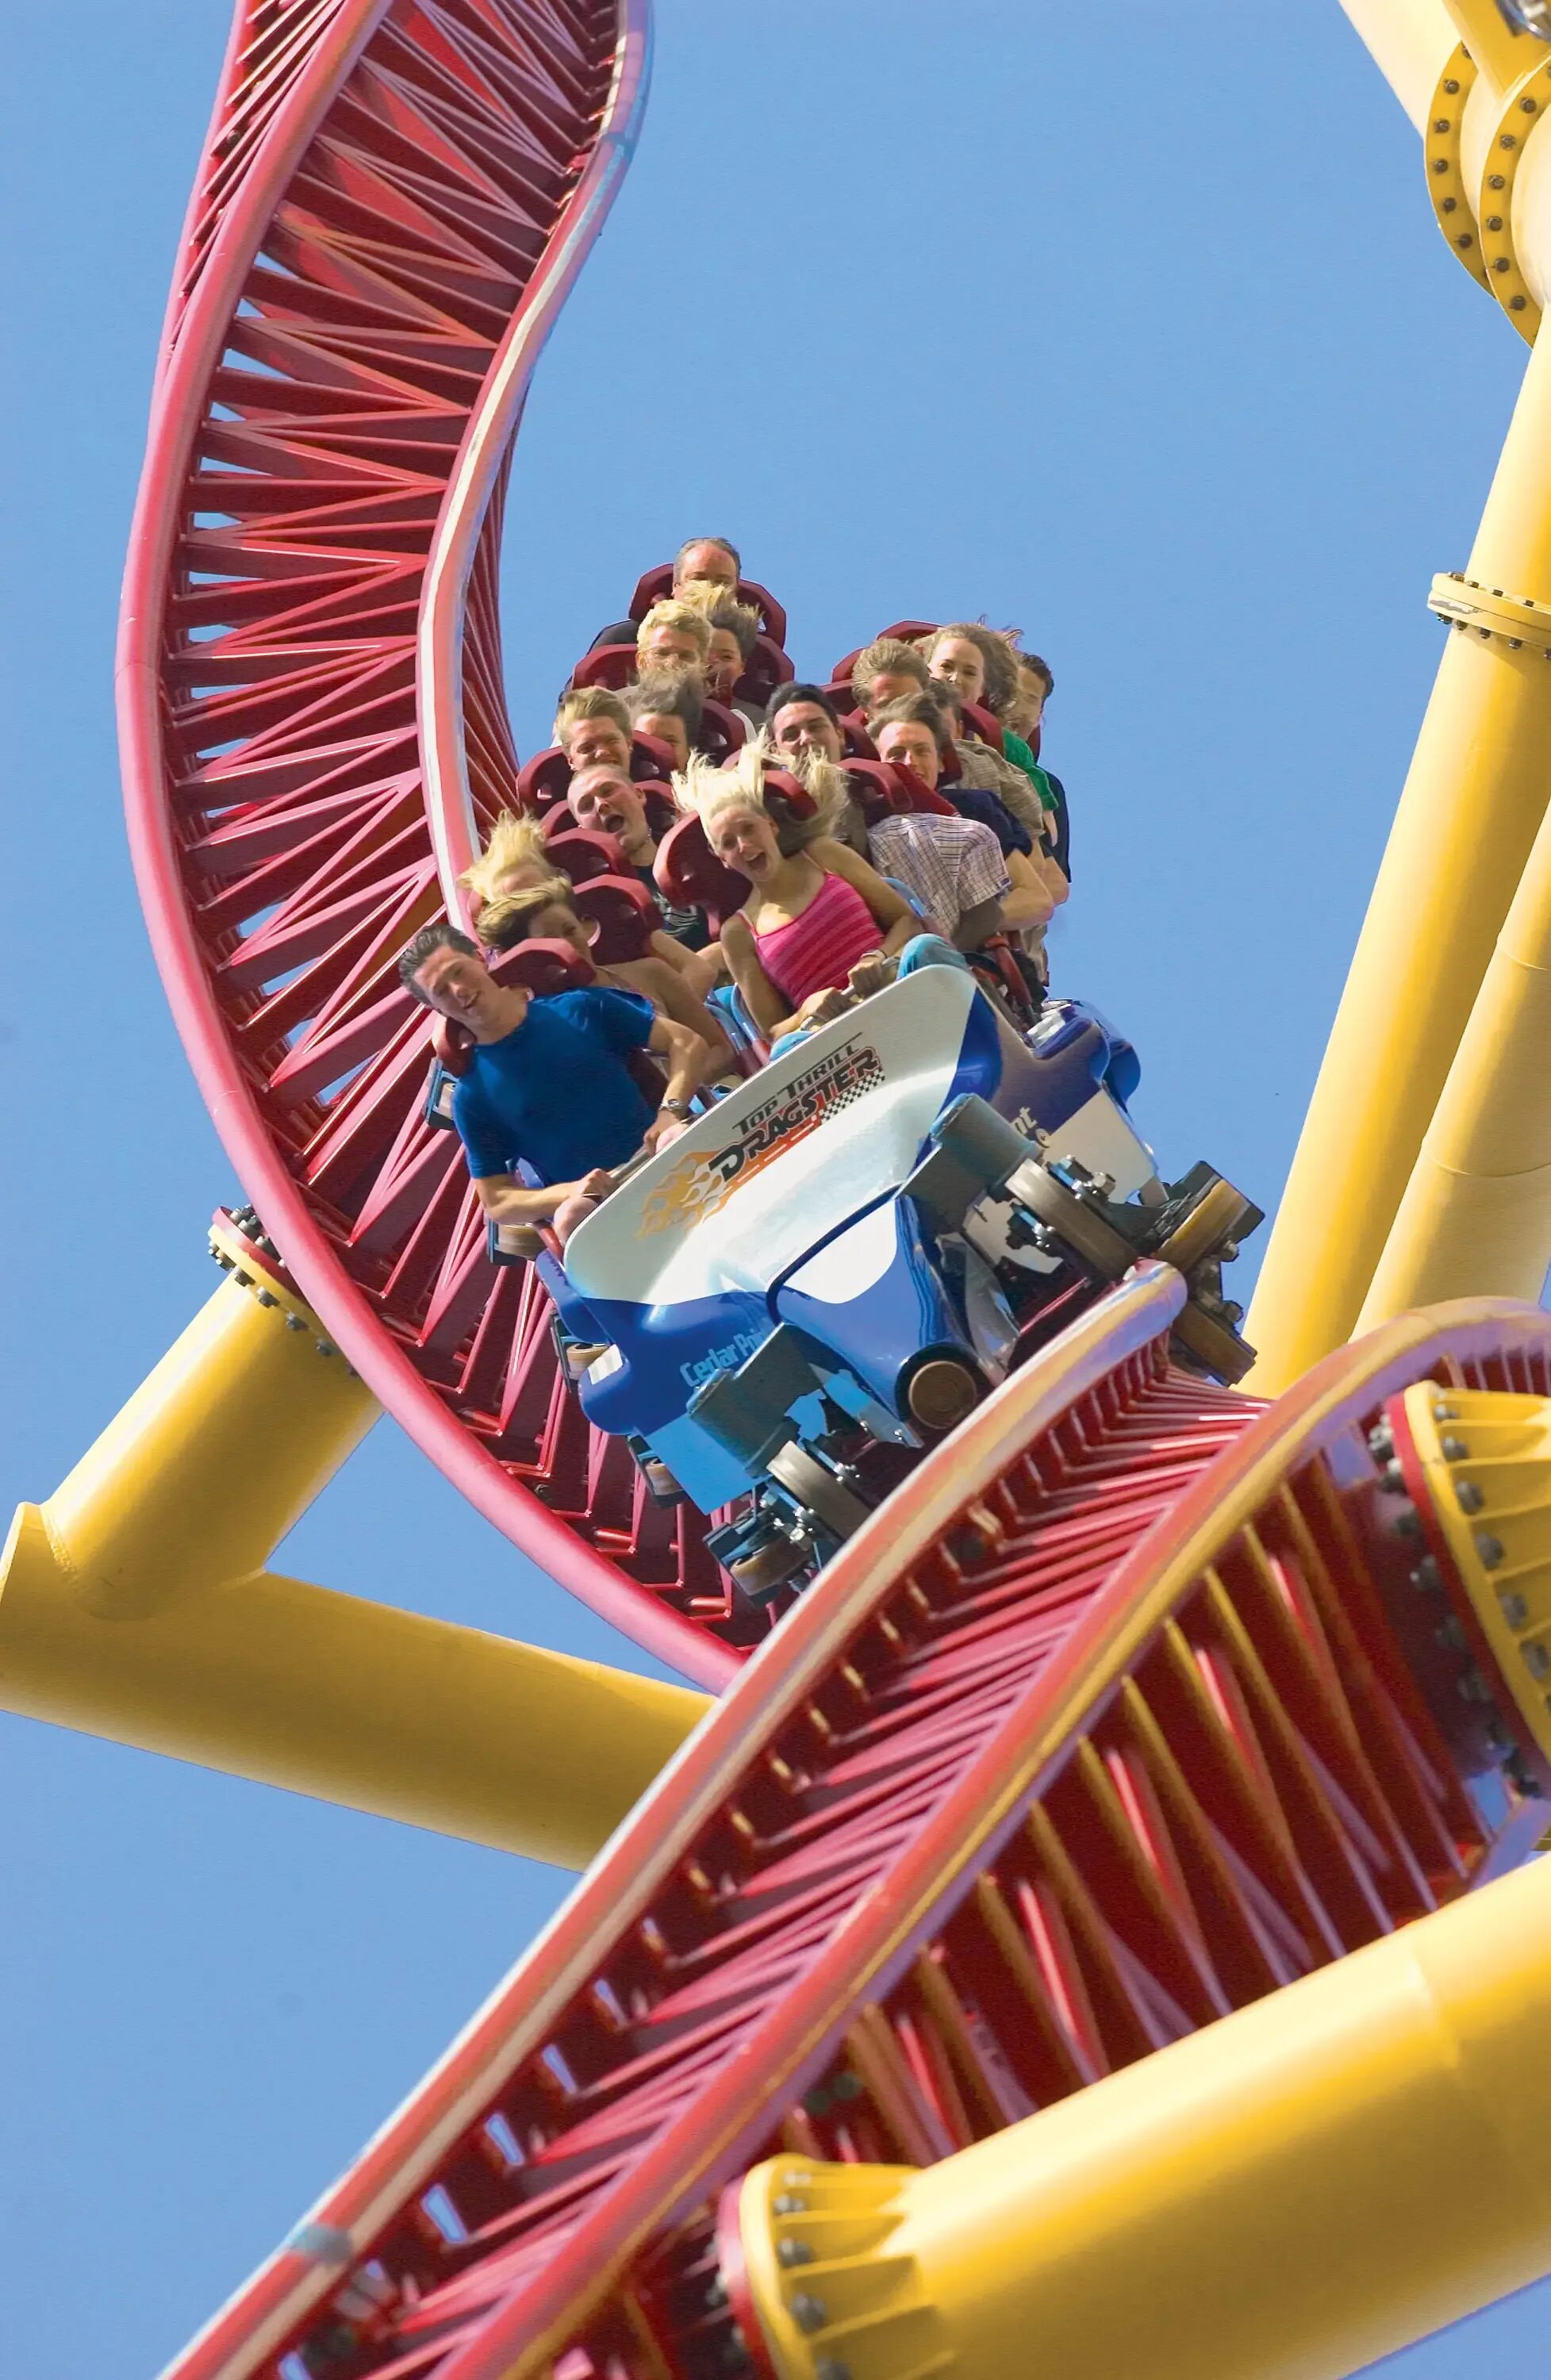 Аттракцион Top Thrill Dragster. Парк развлечений Cedar point Amusement Park. Диснейленд в США американские горки. Roller Coaster аттракцион.